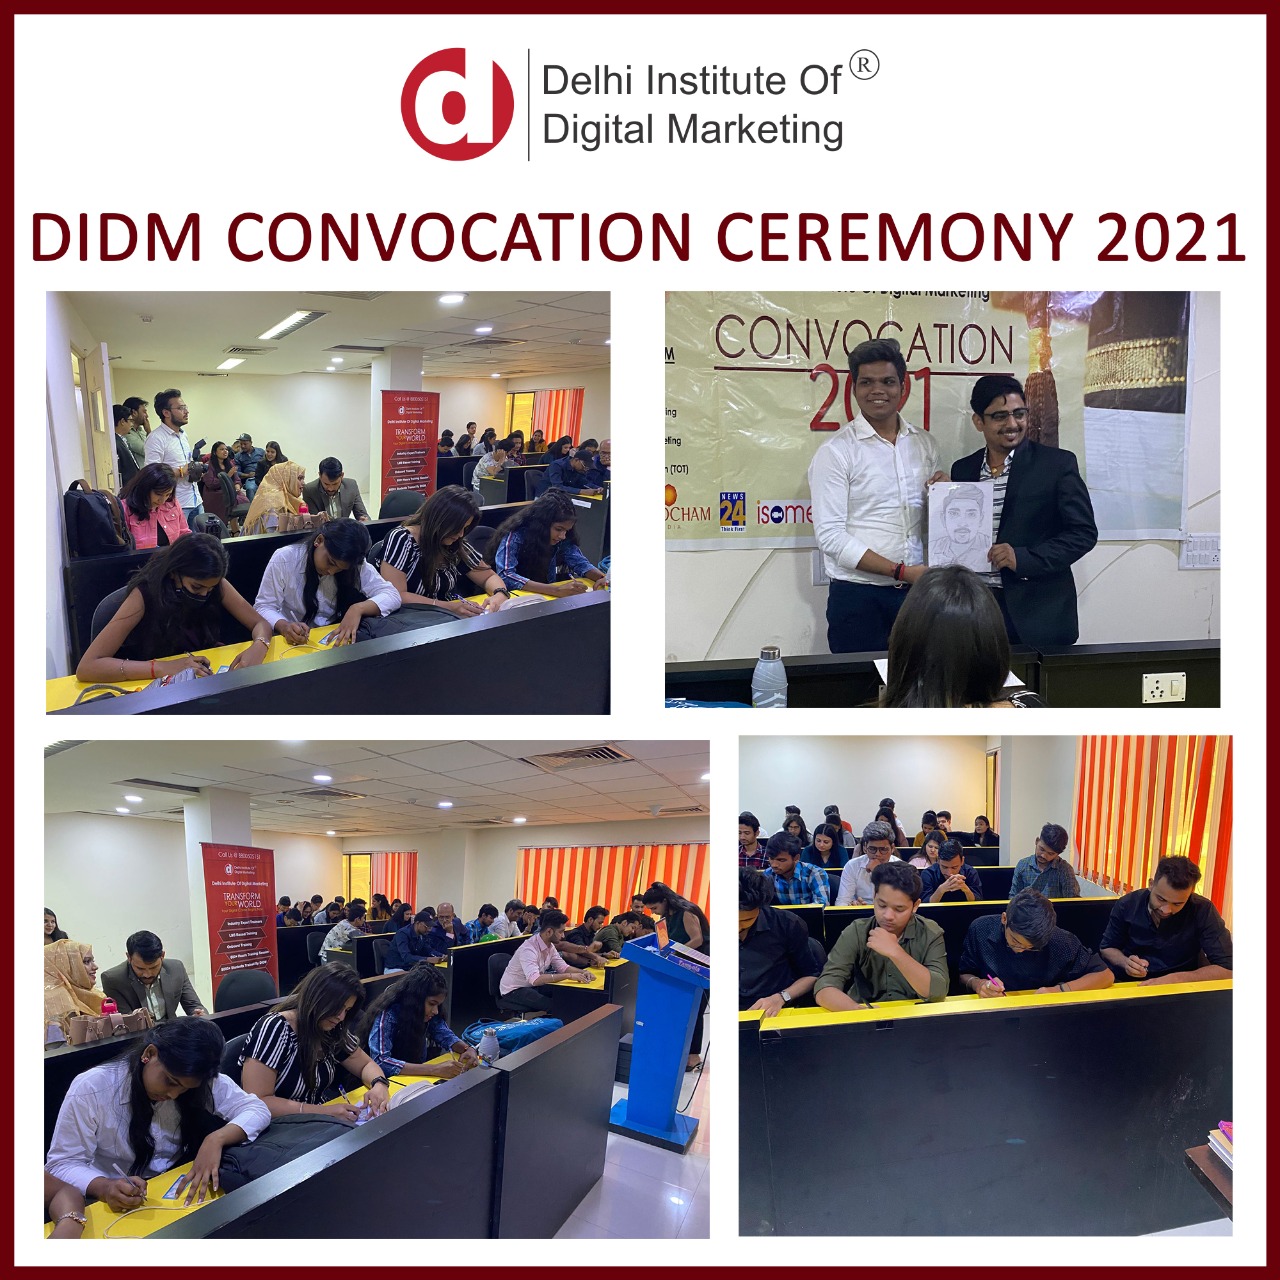 DIDM Convocation Ceremony 2021